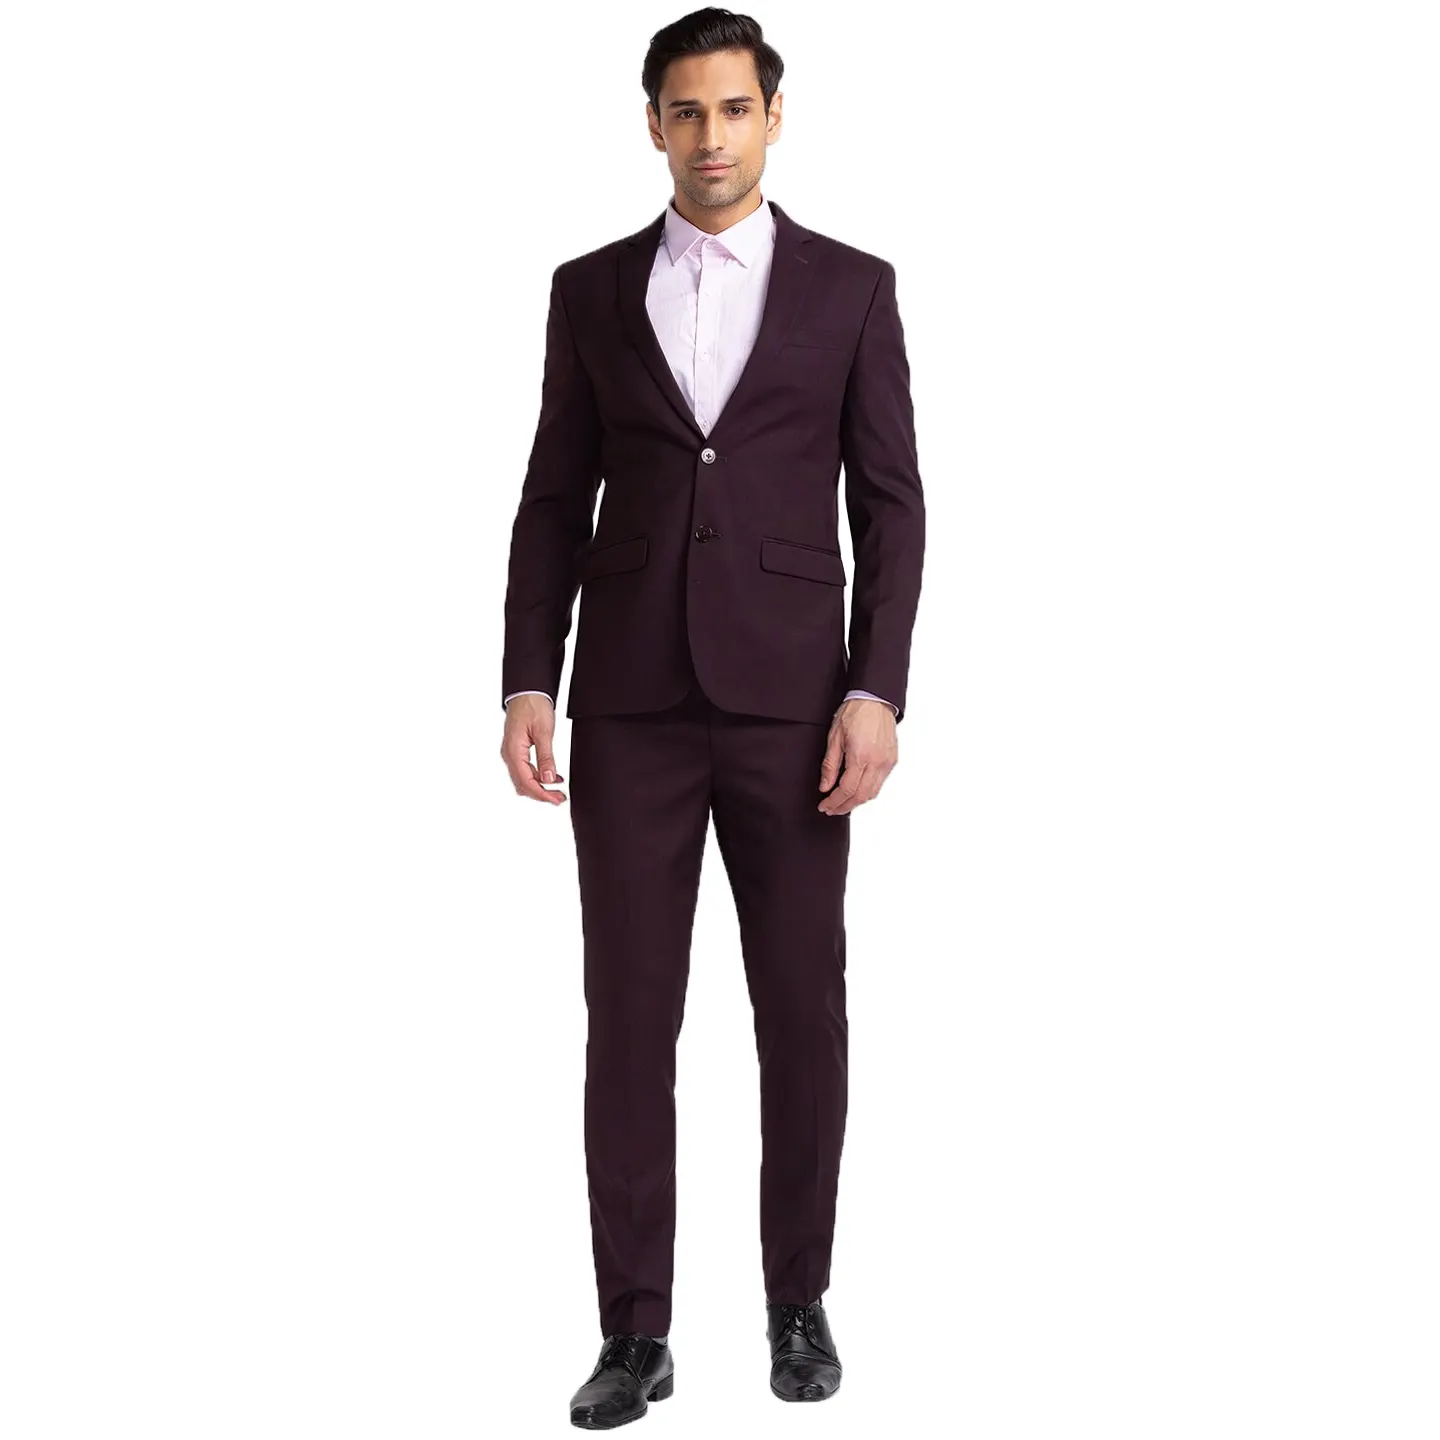 Business Blazer For Men Professional Suit Wholesale Groom Wedding Clothes Men Suit Autumn And Winter Slim Three-Piece Suit Men